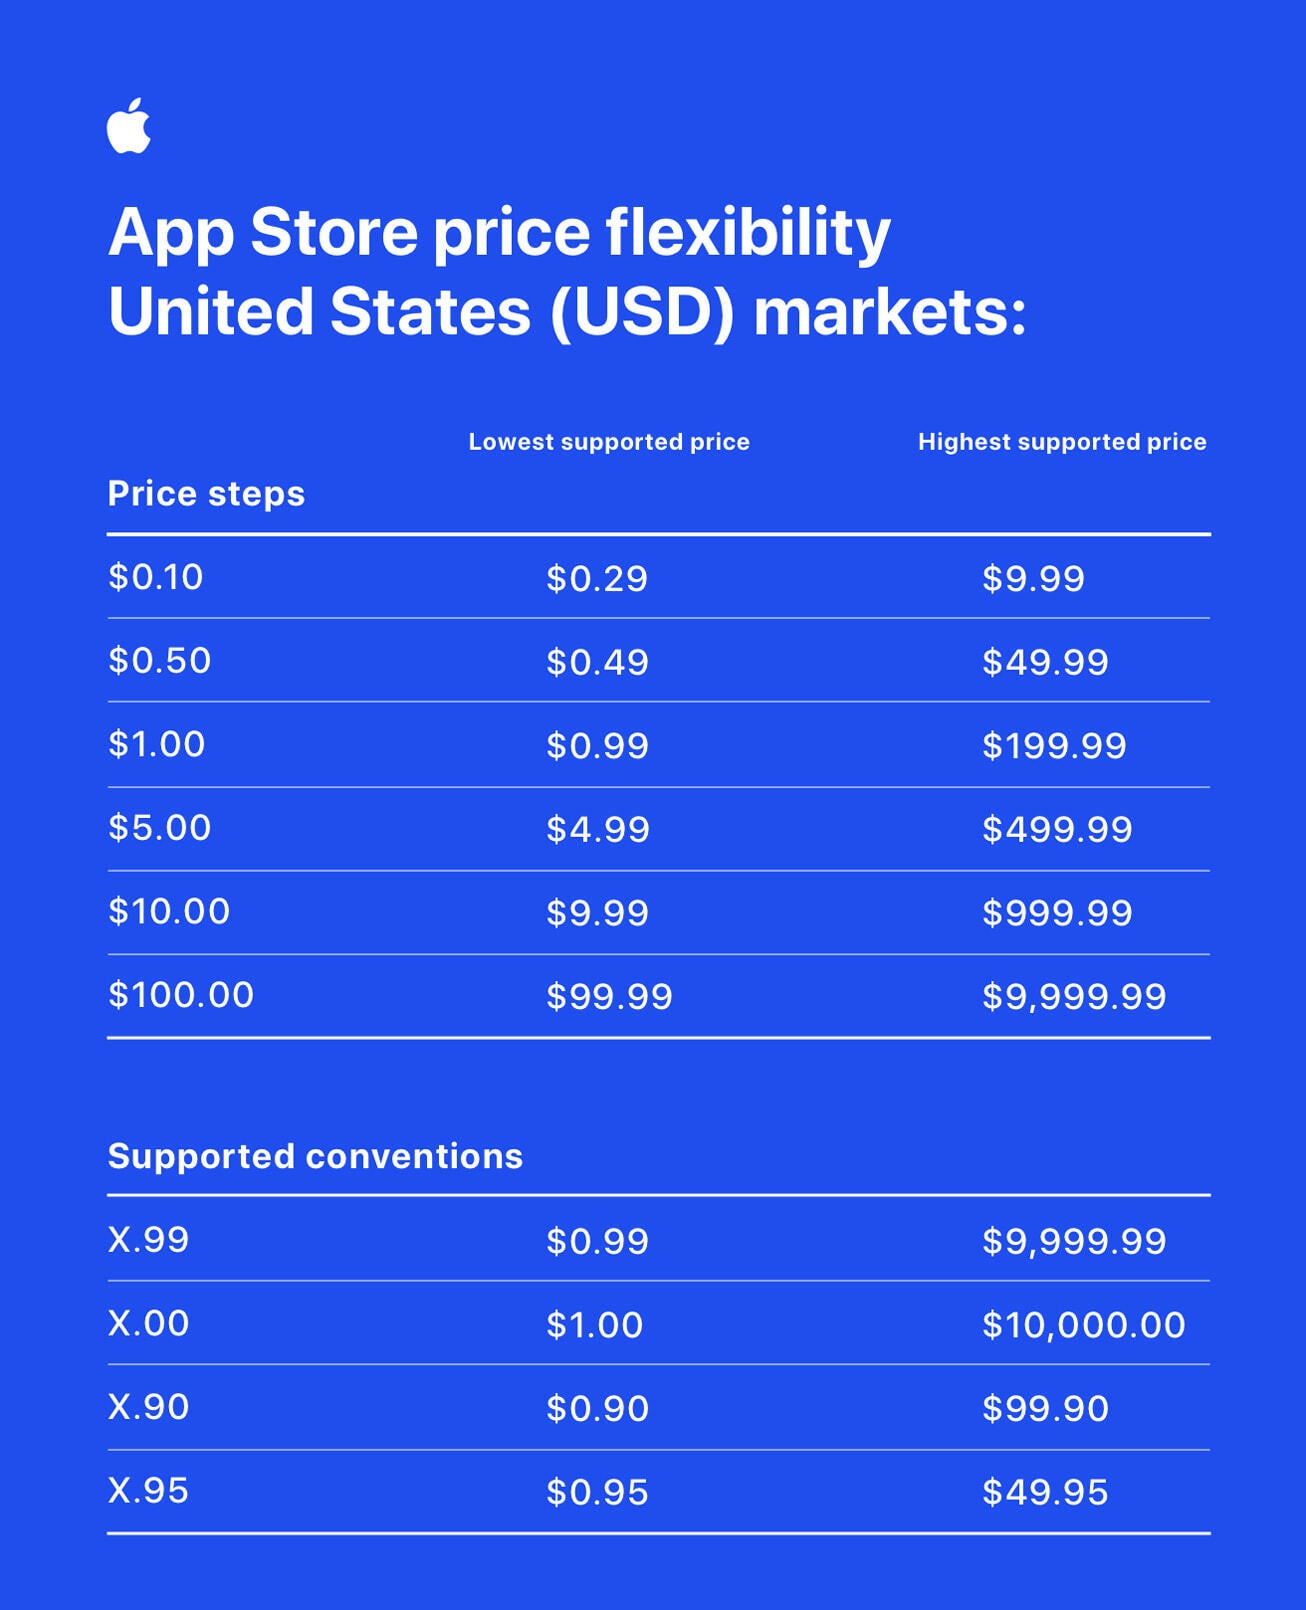 Apple mengumumkan fleksibilitas harga baru untuk App Store - Apple membuat perubahan besar pada harga App Store dan menambahkan 700 titik harga baru